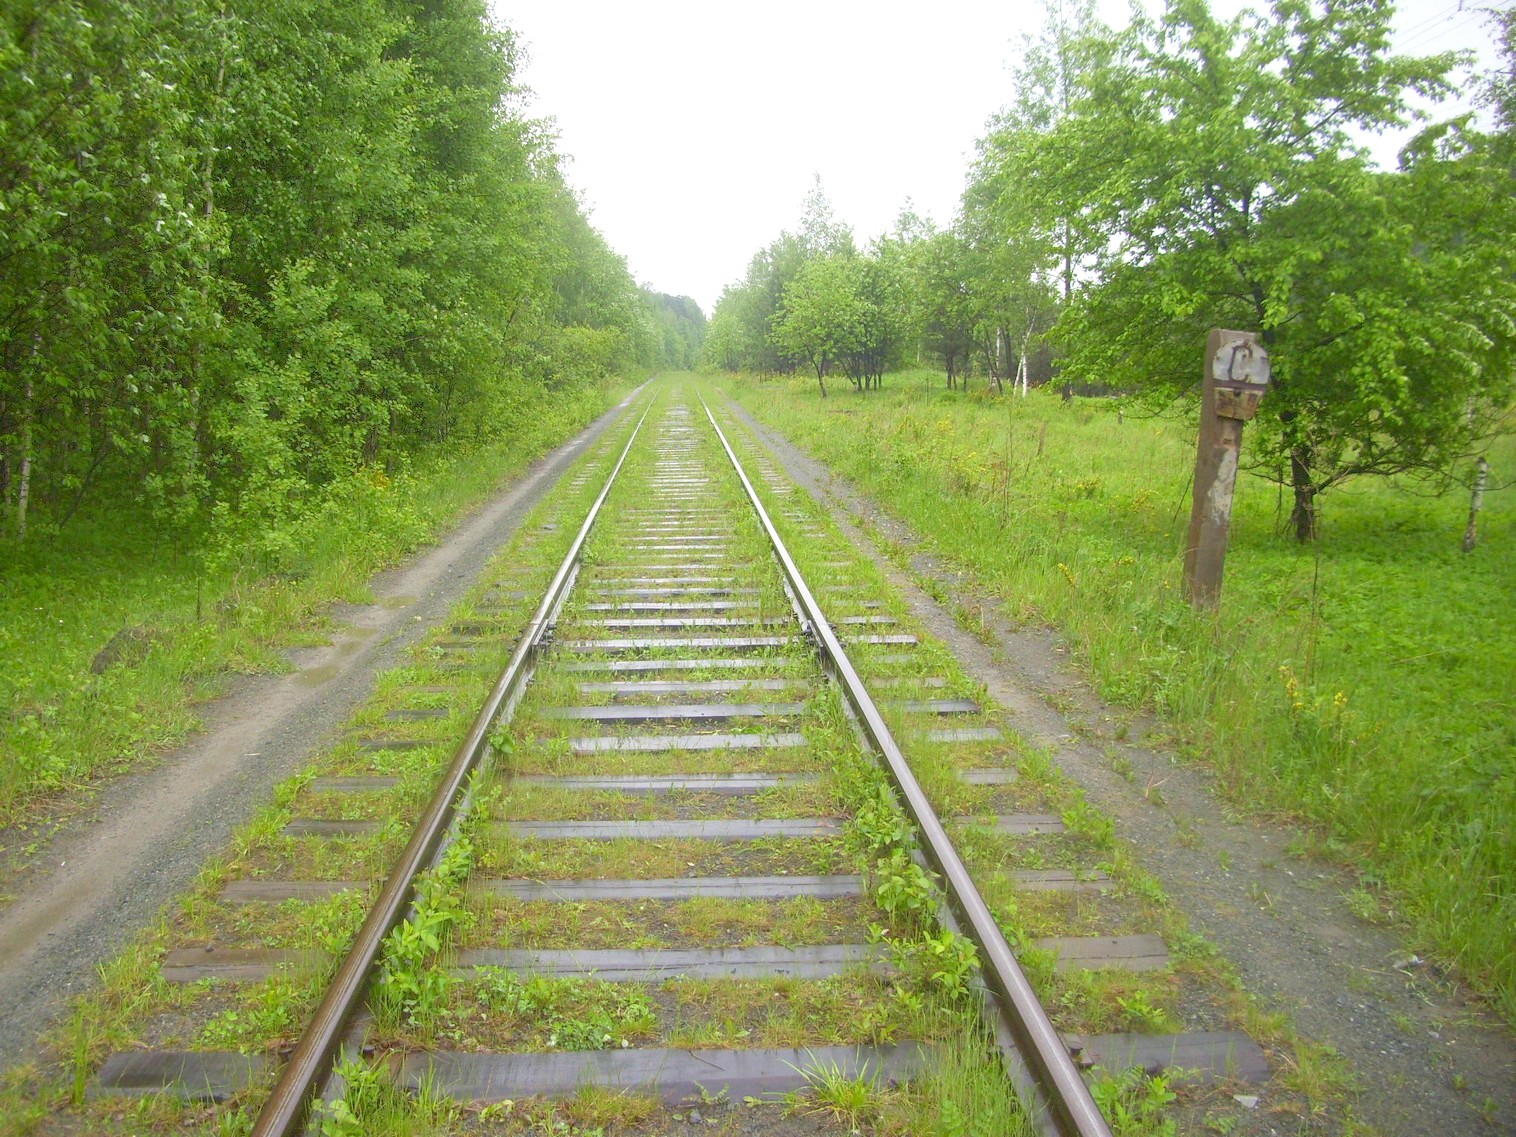 Железнодорожная линия предприятия железнодорожного транспорта завода «Уралмаш»  —  фотографии, сделанные в 2010 году (часть 3)